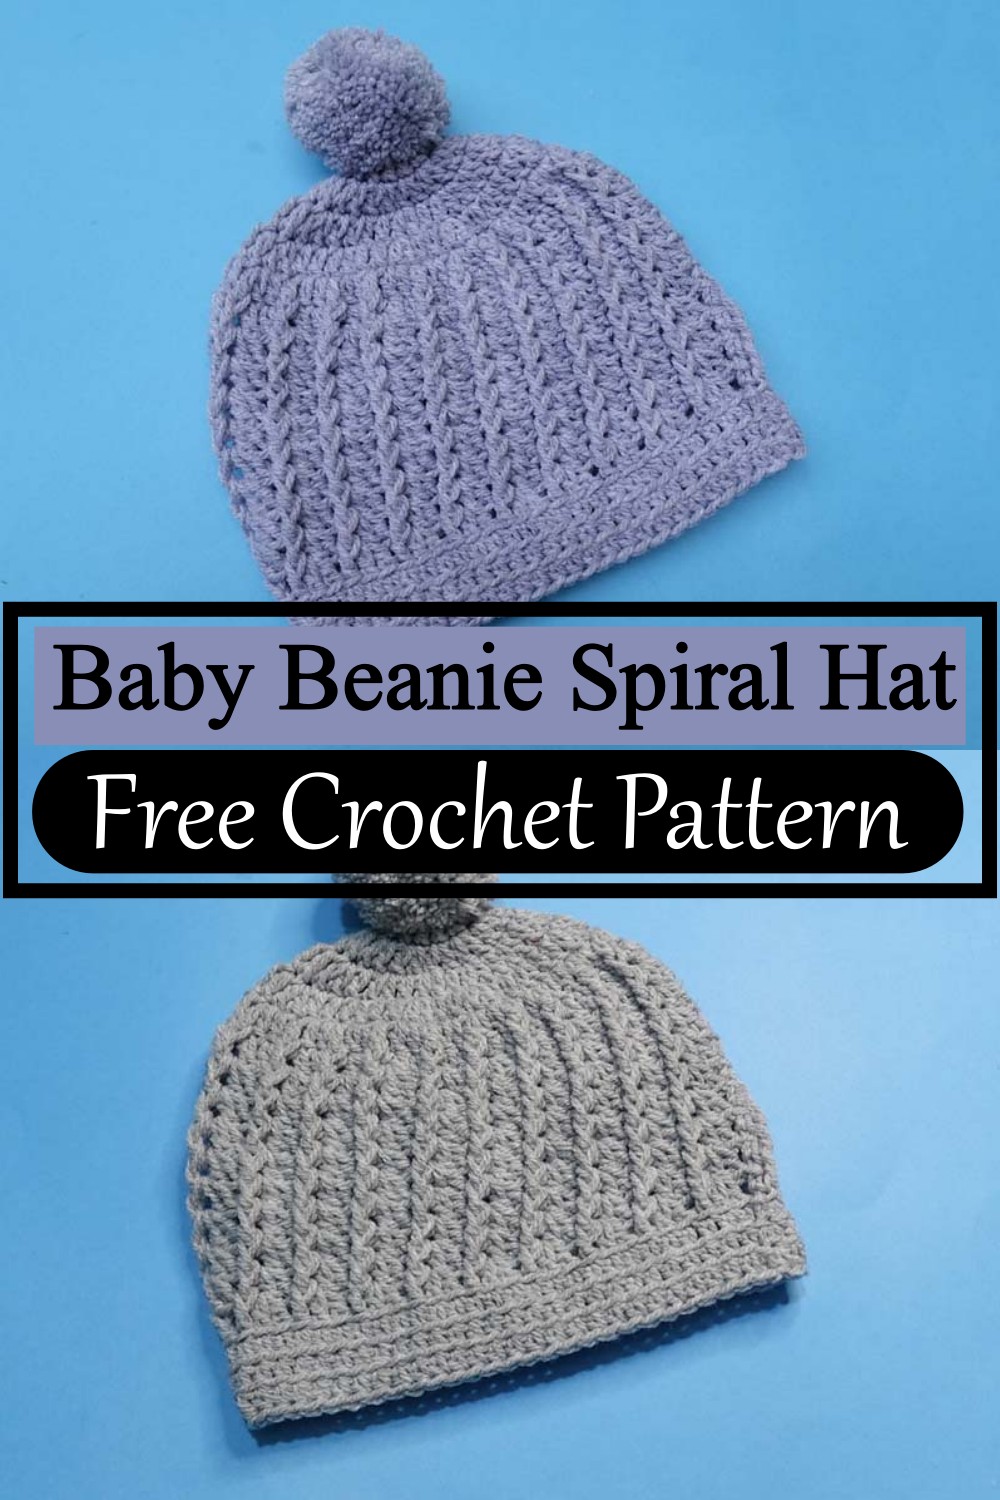 Baby Beanie Spiral Hat